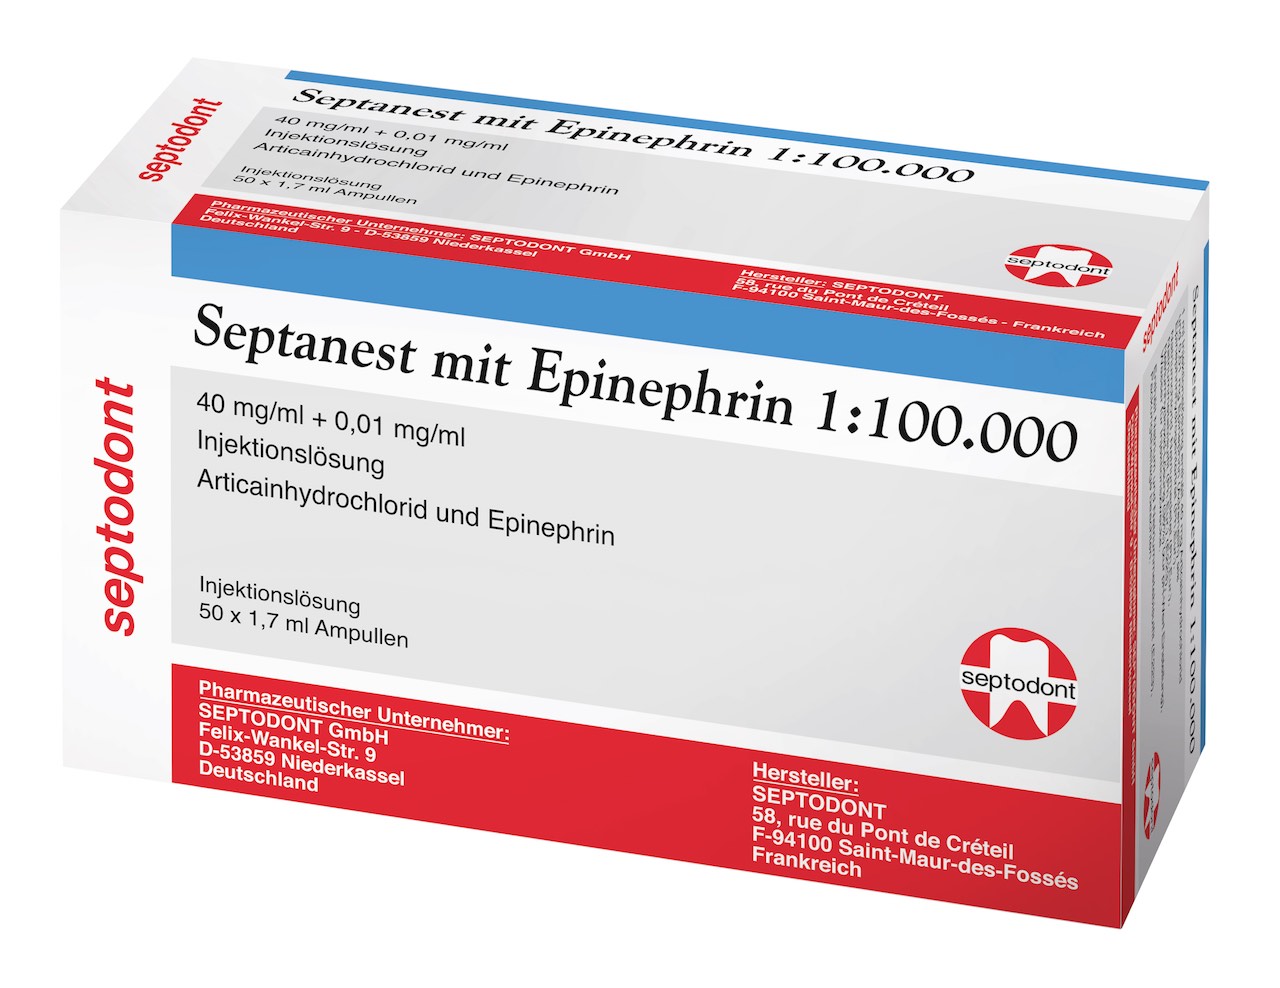 Septanest mit Adrenalin 1/100 000 heißt jetzt "Septanest mit Epinephrin 1:100.000 - 40 mg/ml + 0,01 mg/ml Injektionslösung"